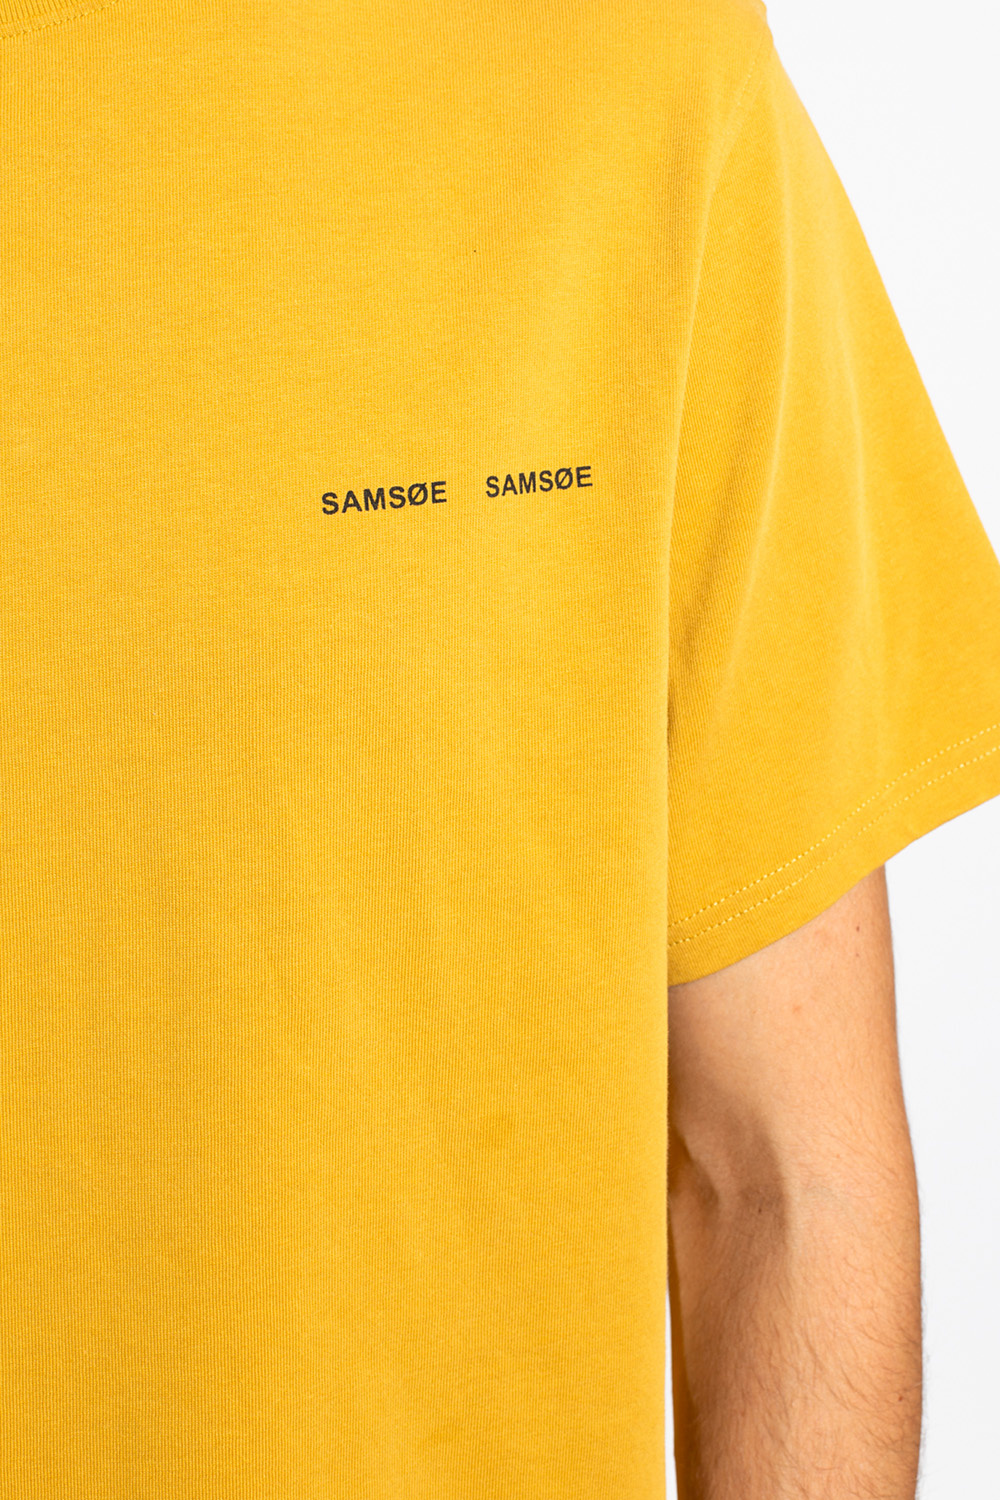 Samsøe Samsøe Logo T-shirt